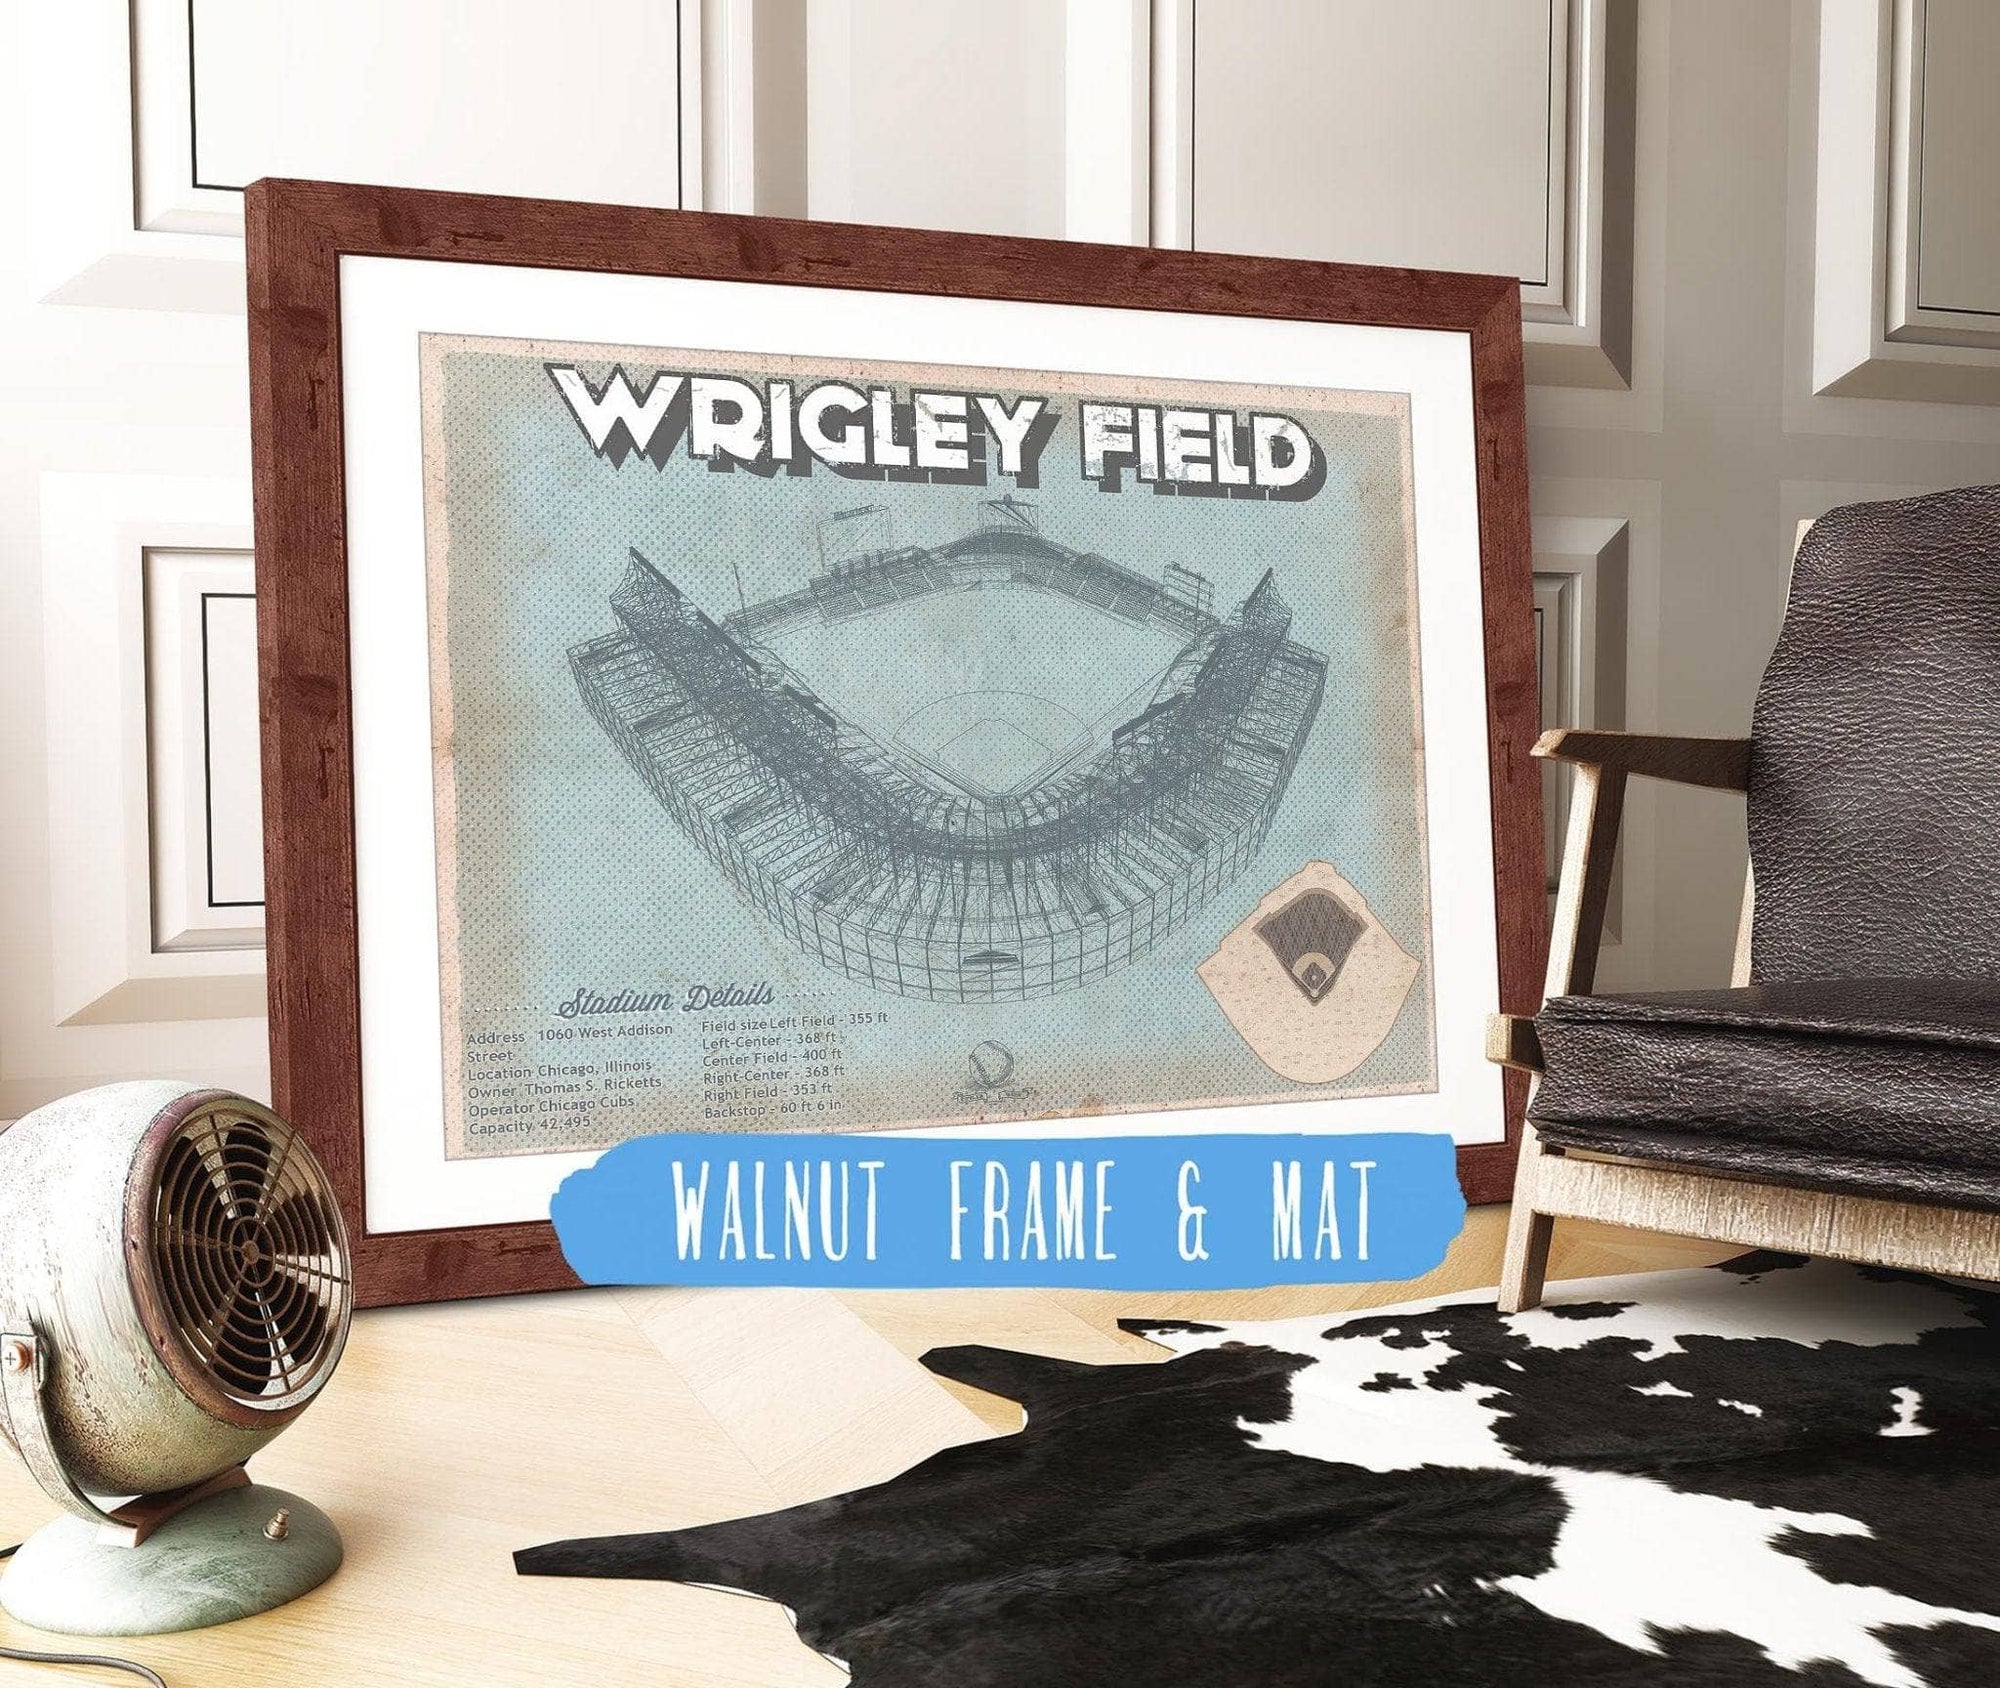 Cutler West 14" x 11" / Walnut Frame & Mat Wrigley Field Art - Chicago Cubs Baseball Print 635805674-14"-x-11"8249